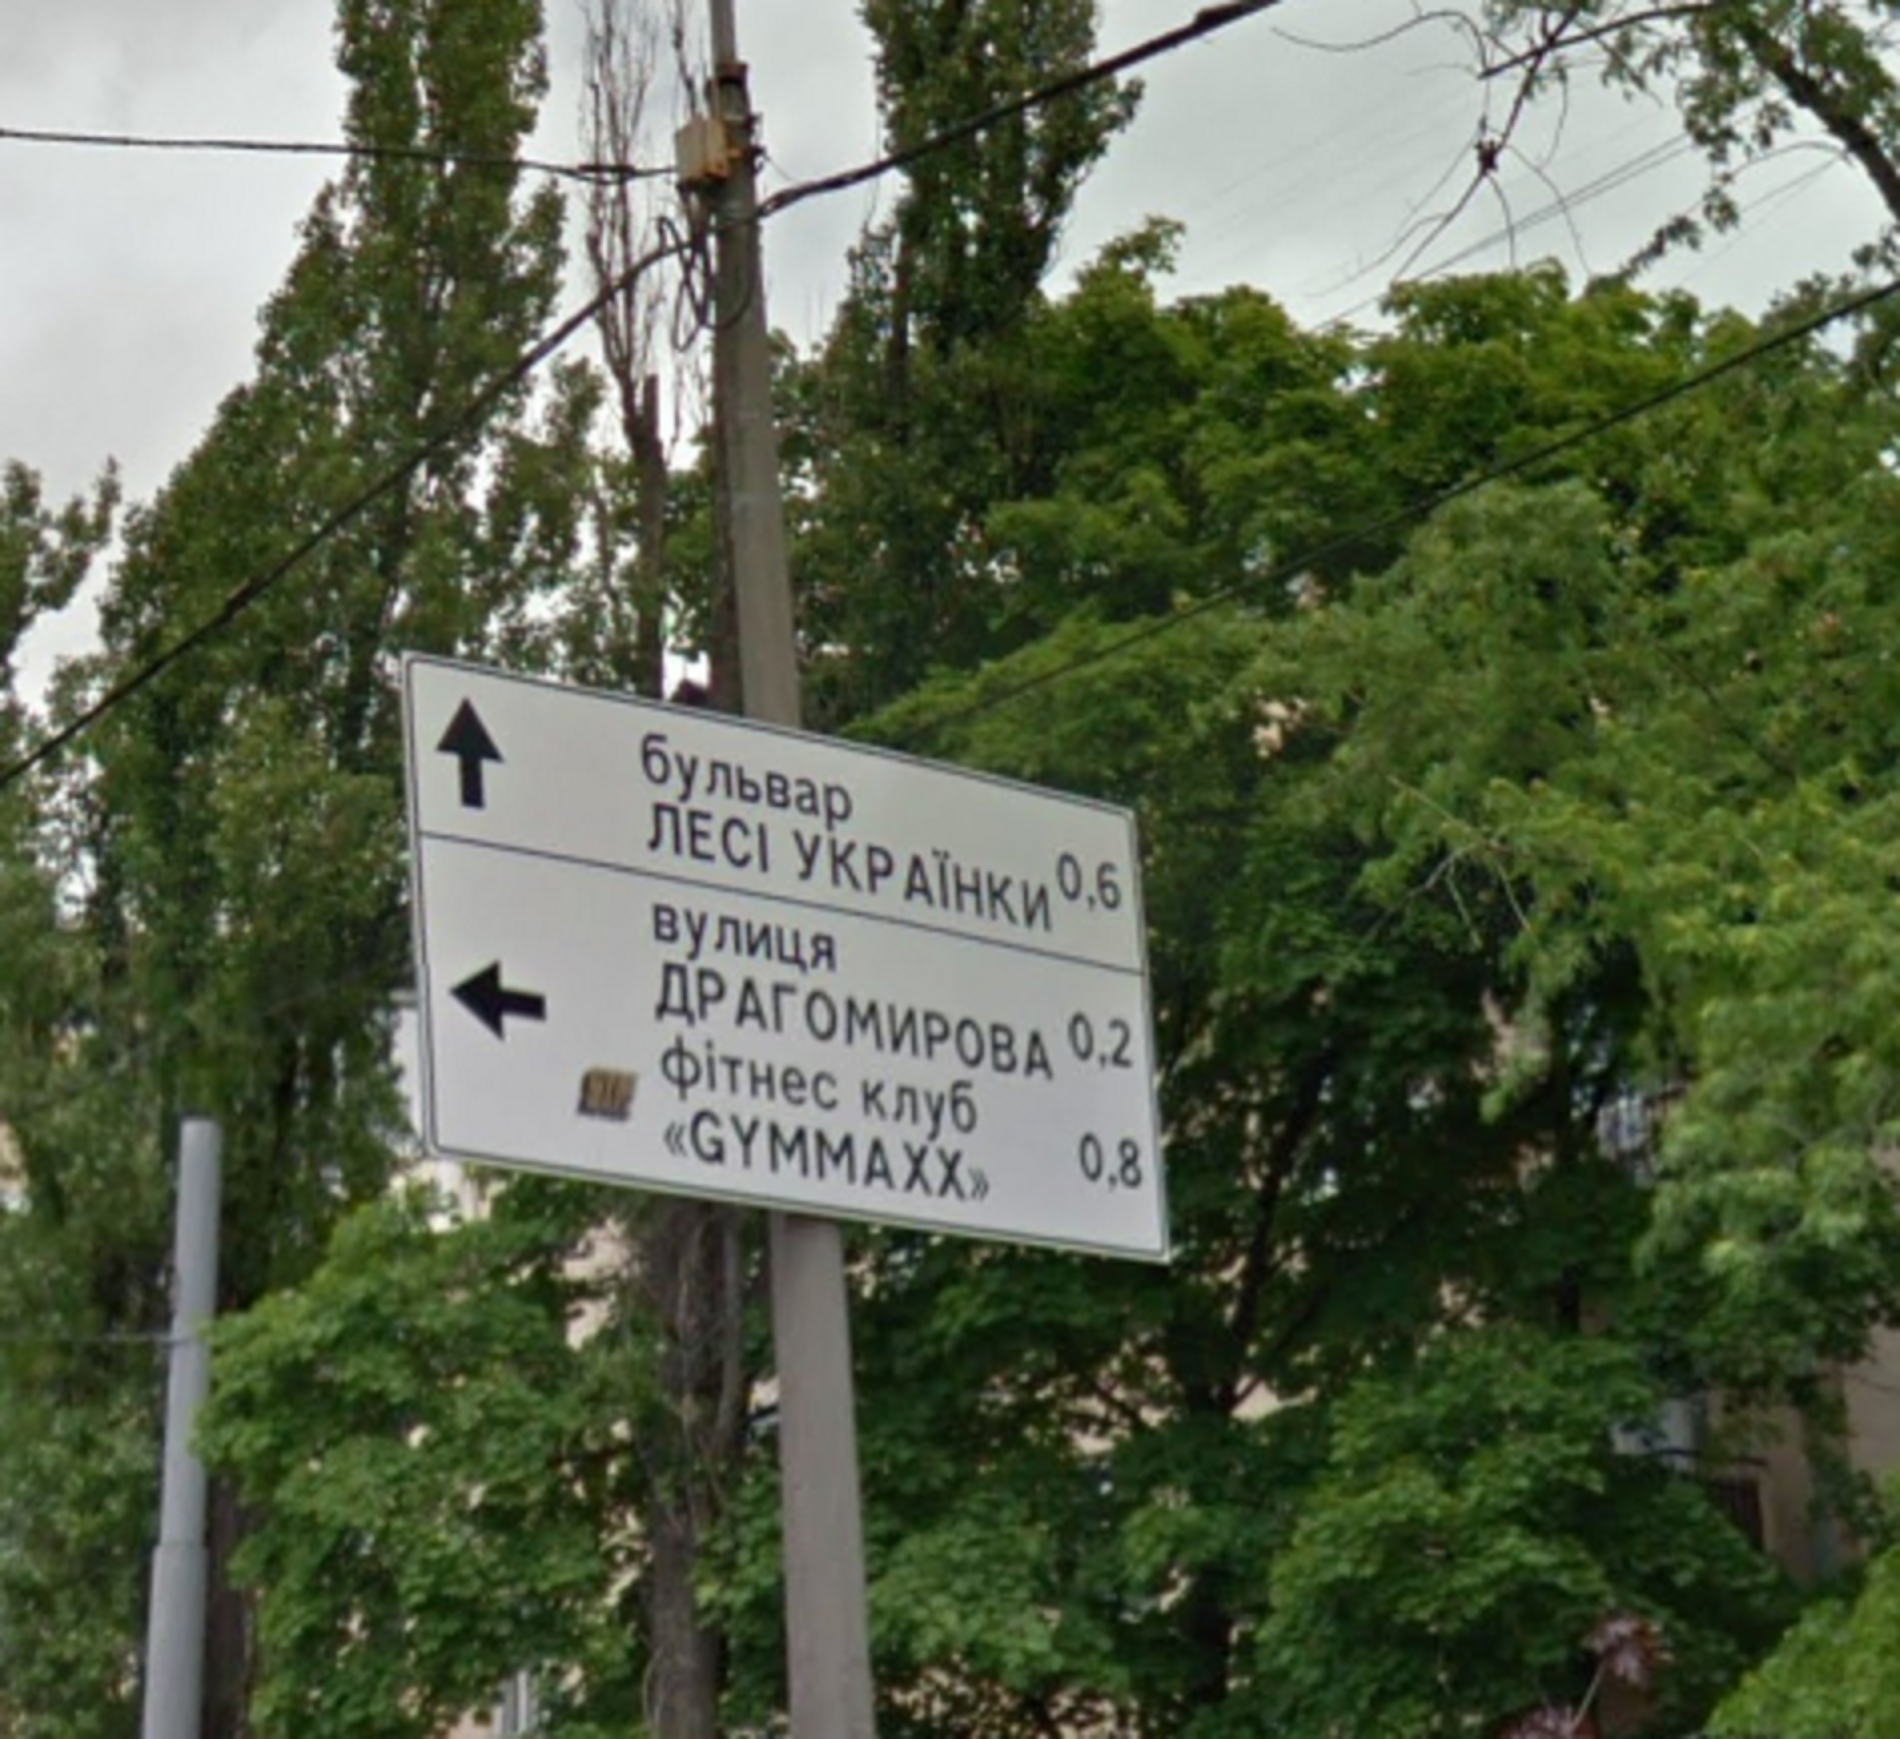 El gobierno de Ucrania pide retirar los letreros de las calles para confundir a los rusos